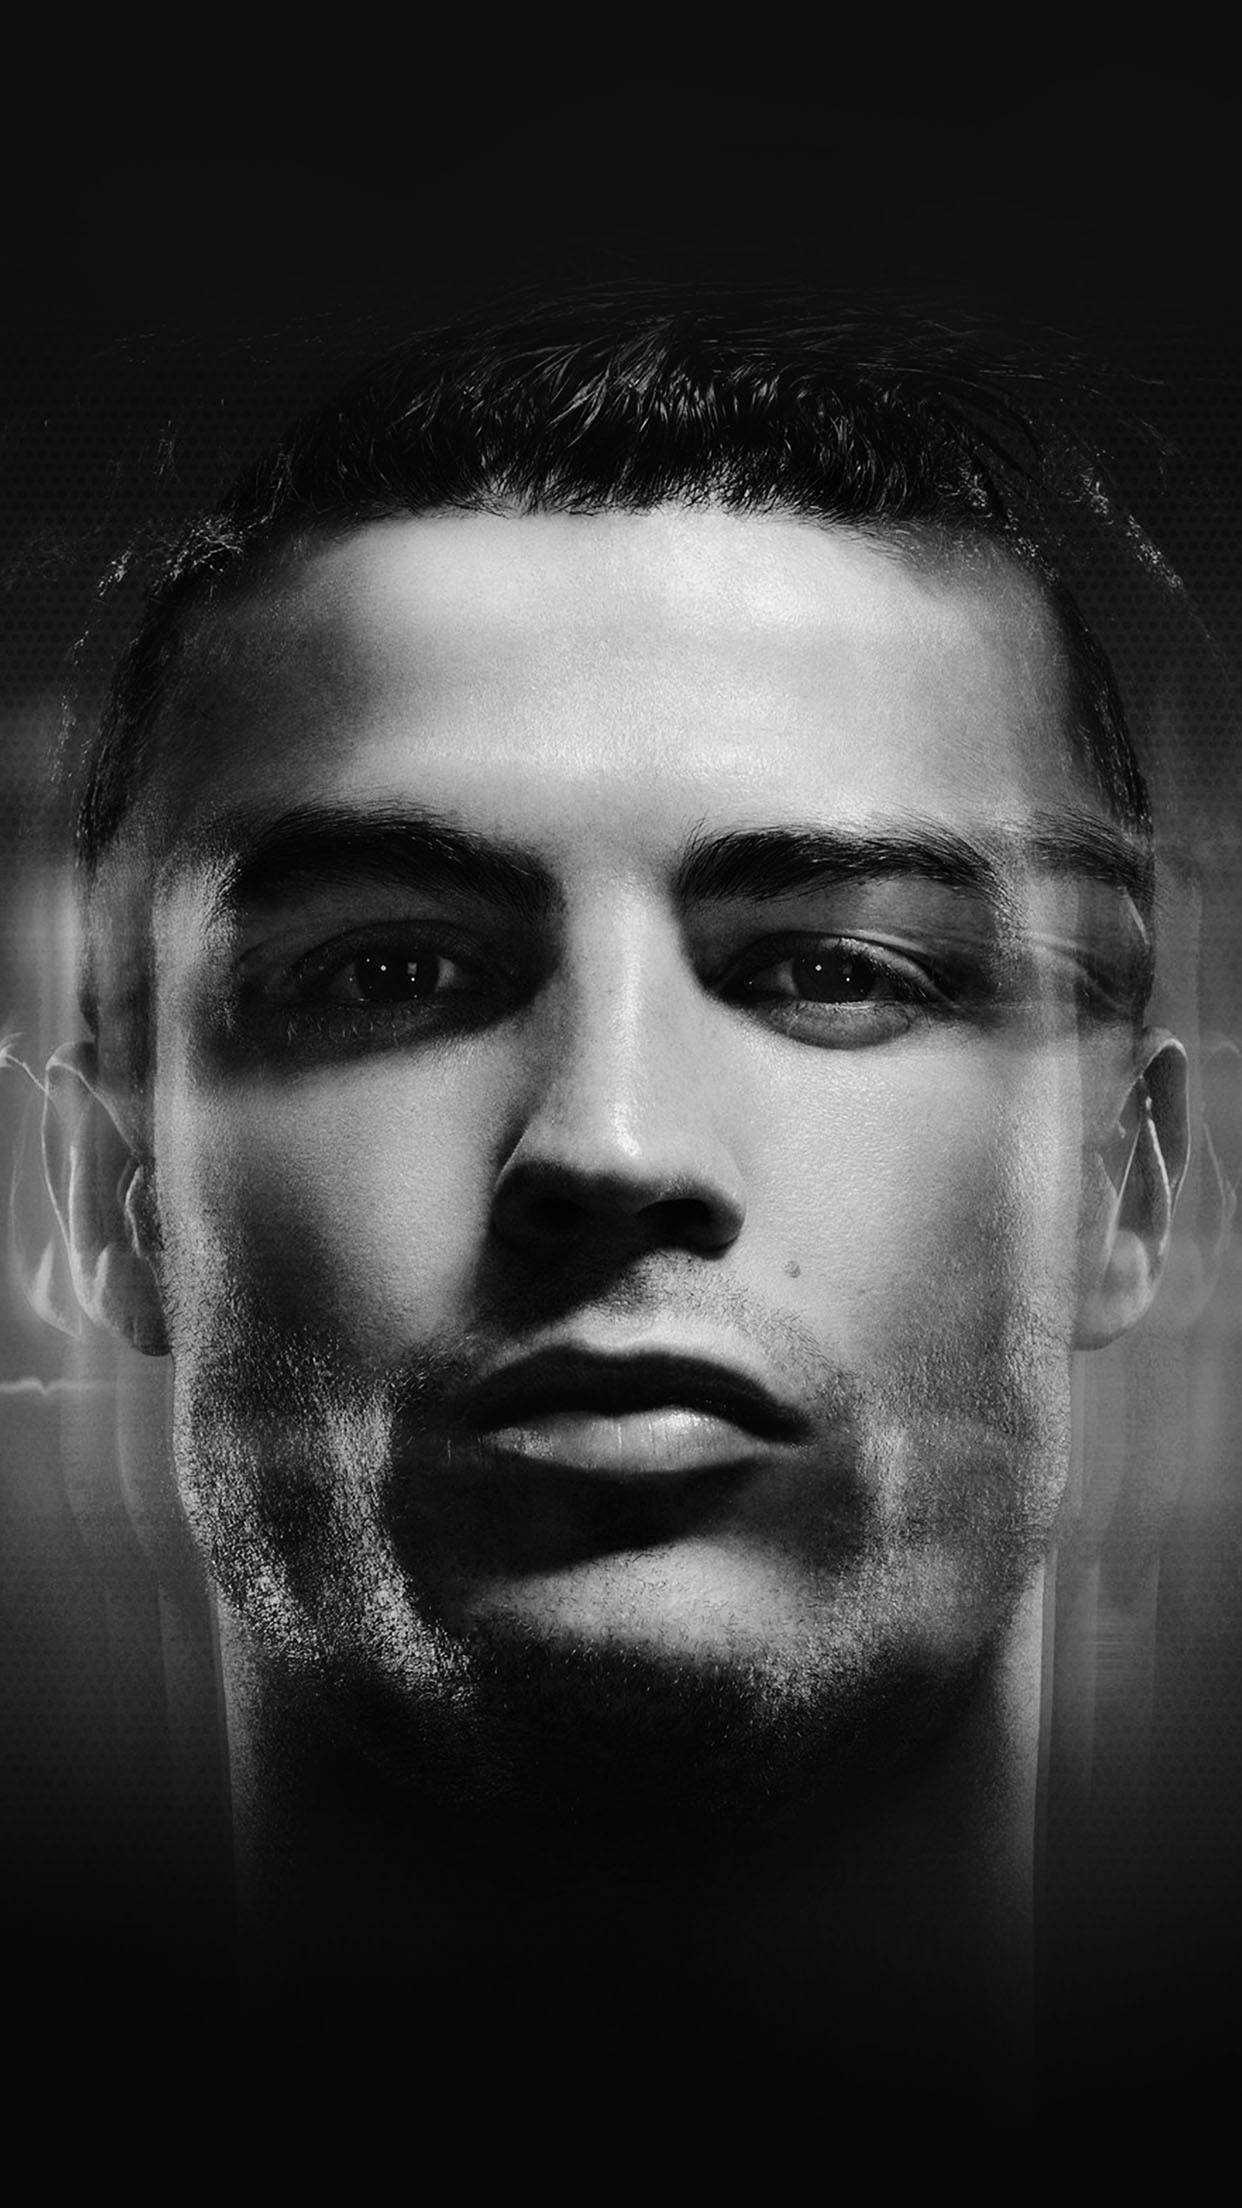 Cristiano Ronaldo Black And White Profile Android Wallpaper free download